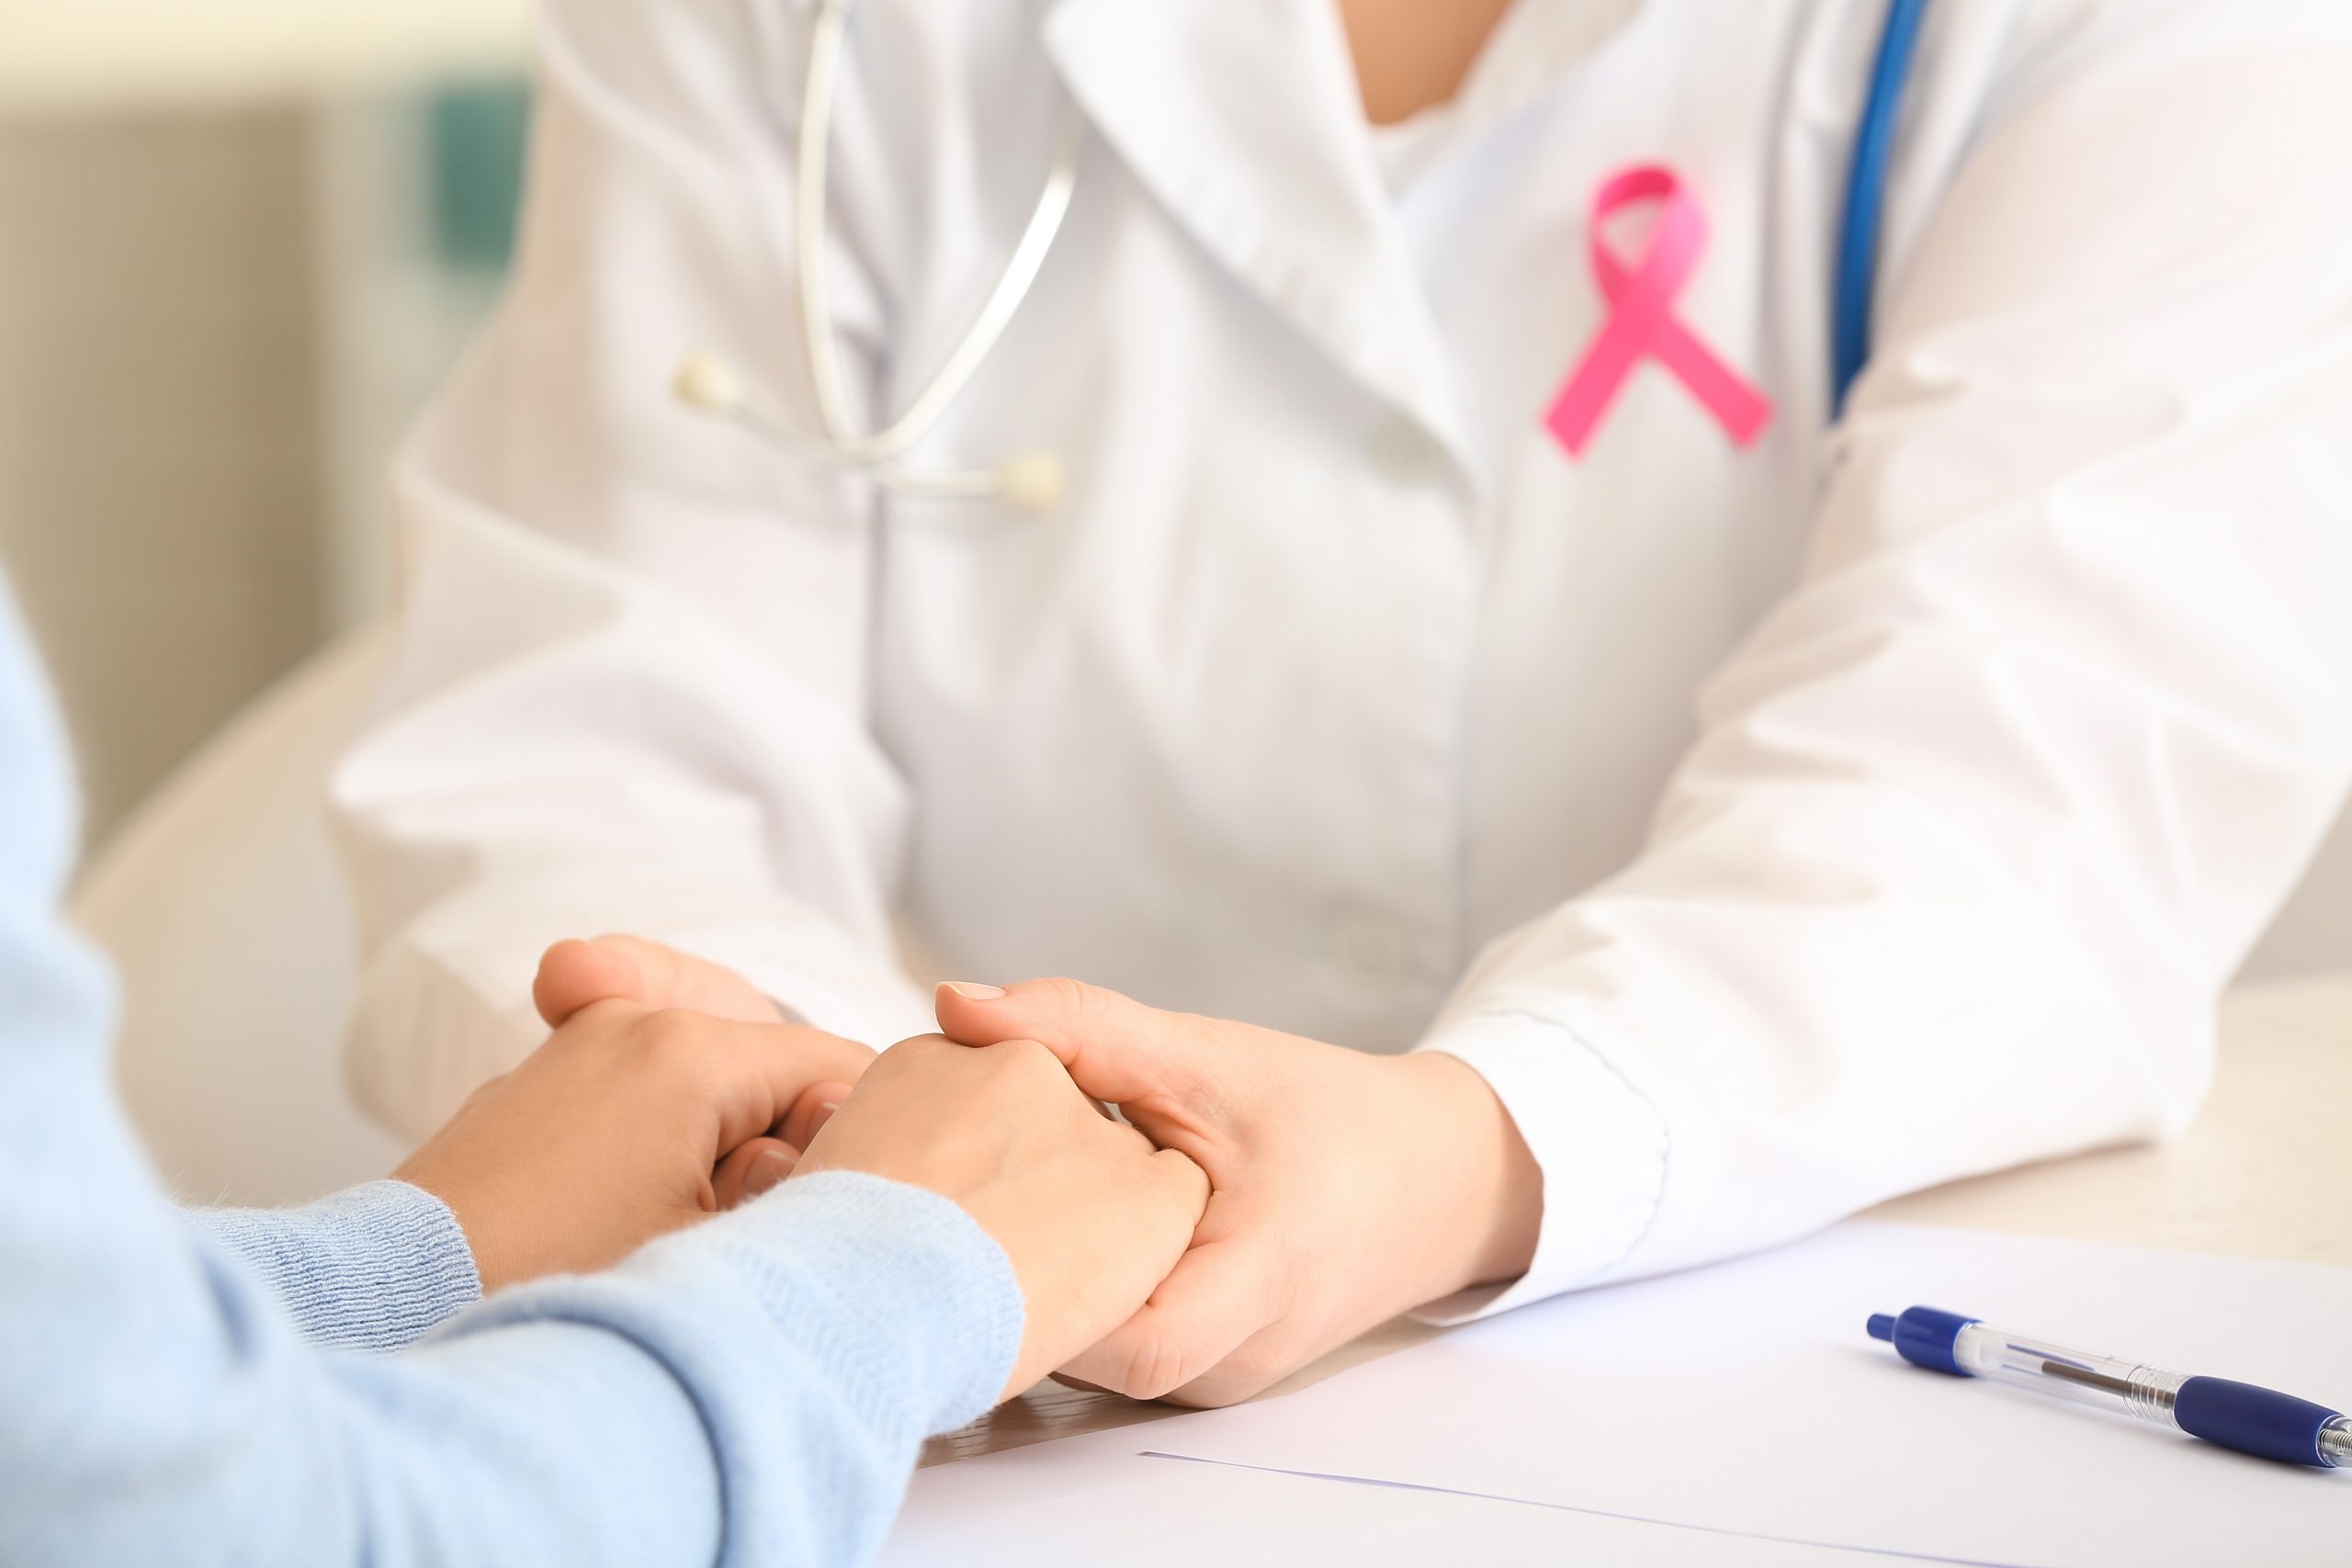 Nova classificação do câncer de mama permite o estudo te novos tratamentos.